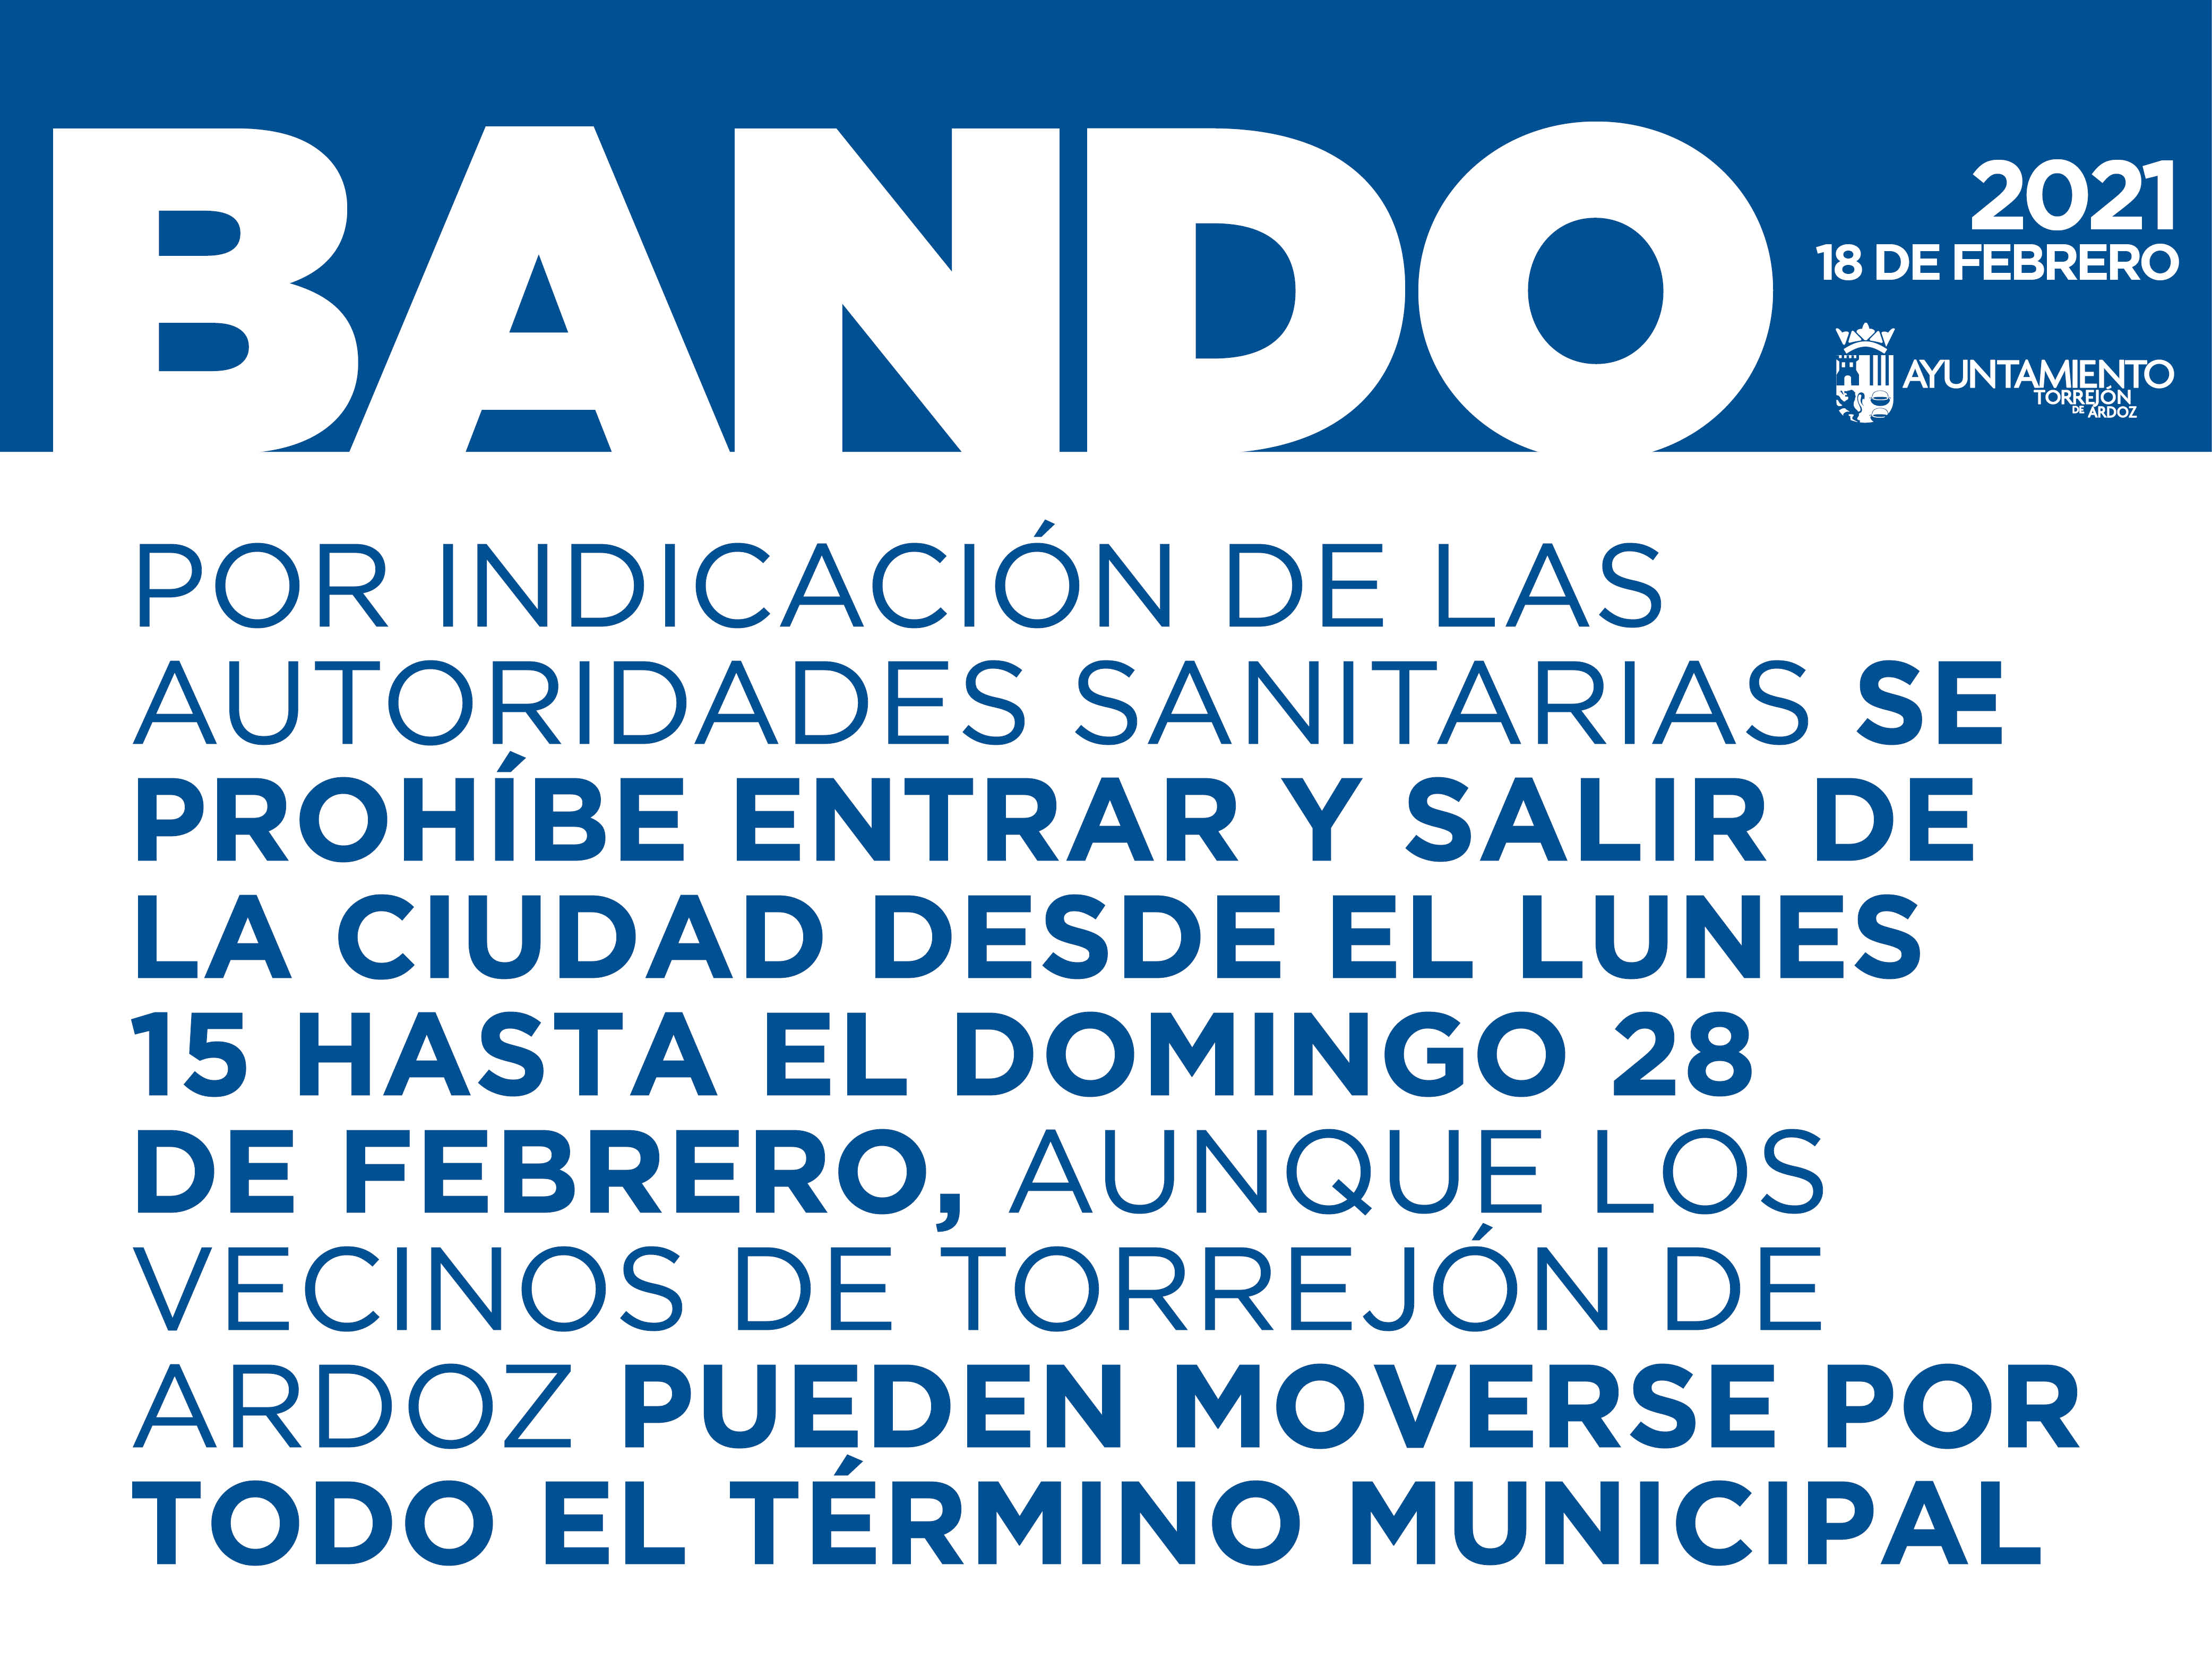 Torrejón de Ardoz estará cerrada en todo su perímetro desde el lunes 15 de febrero hasta el domingo 28 de febrero por indicación de las autoridades sanitarias